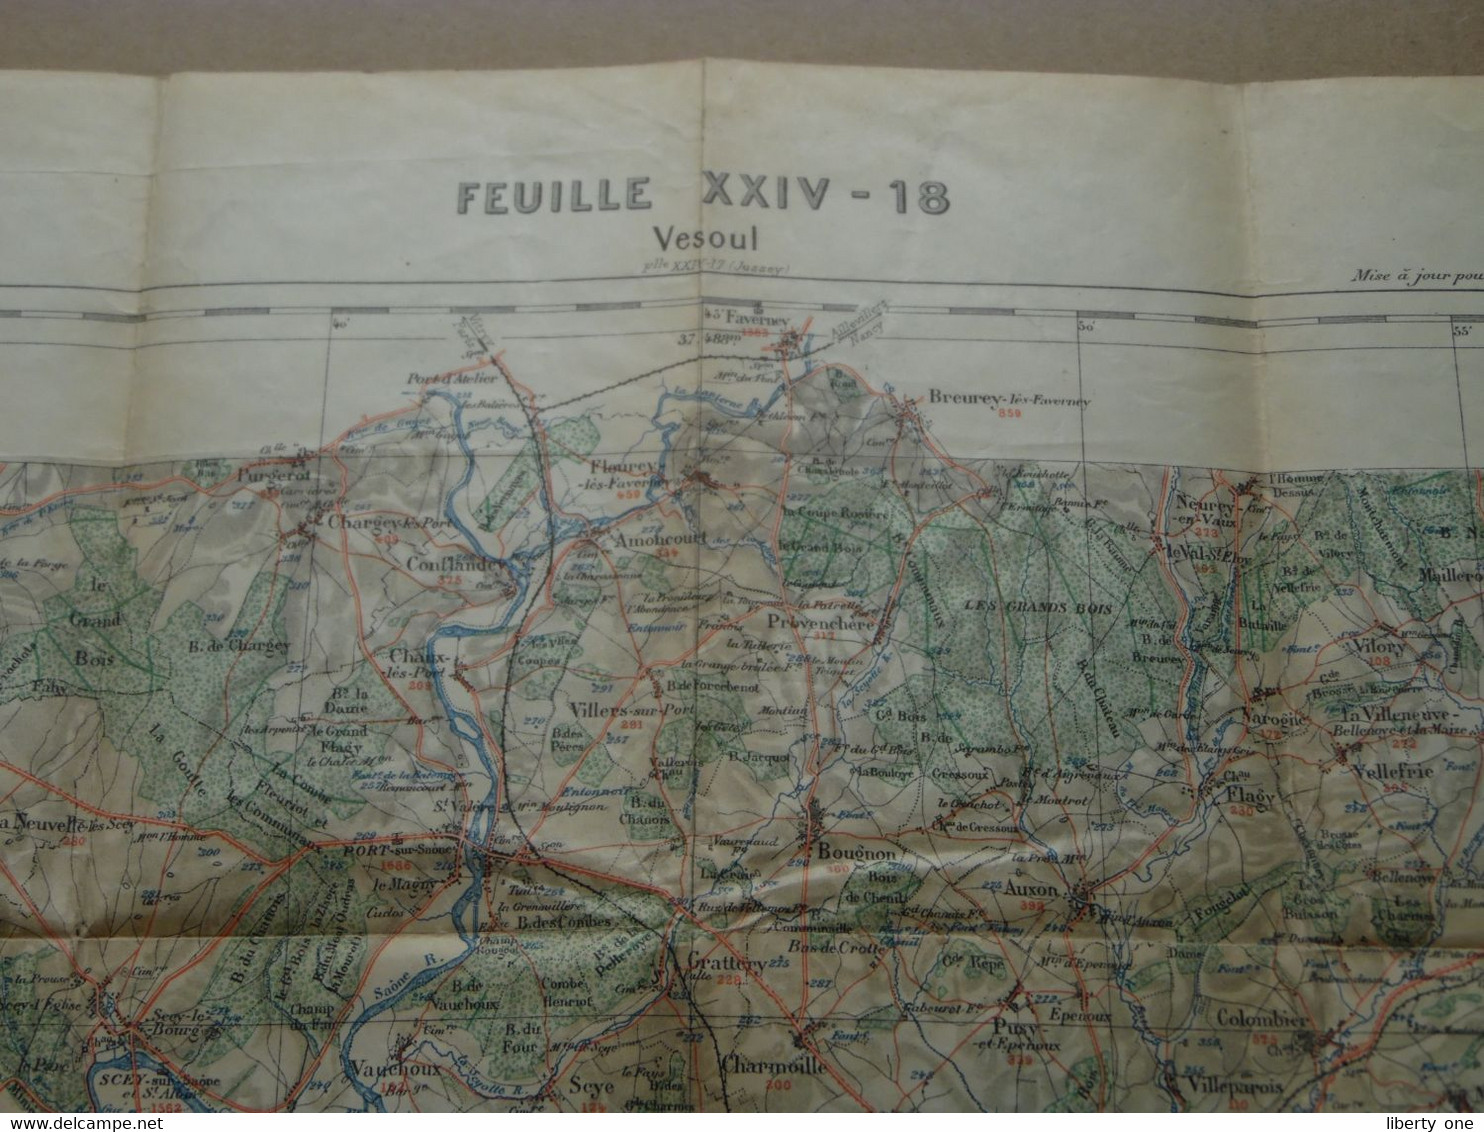 VESOUL - Feuille XXIV-18 " Tirage 1897 - 1/100.000 ( Lib. Hachette ) Voir Scans / Photos SVP ! - Europe